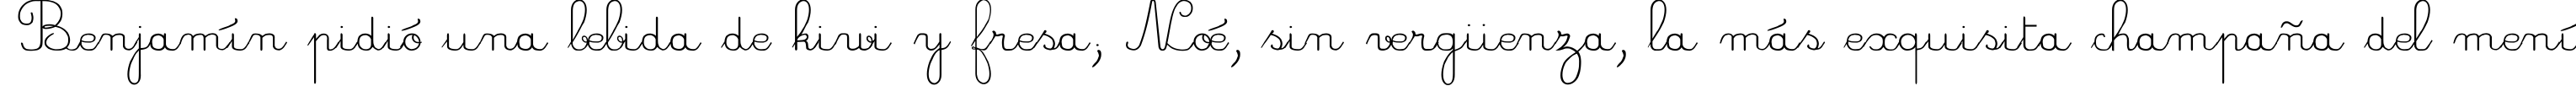 Пример написания шрифтом CrayonL текста на испанском